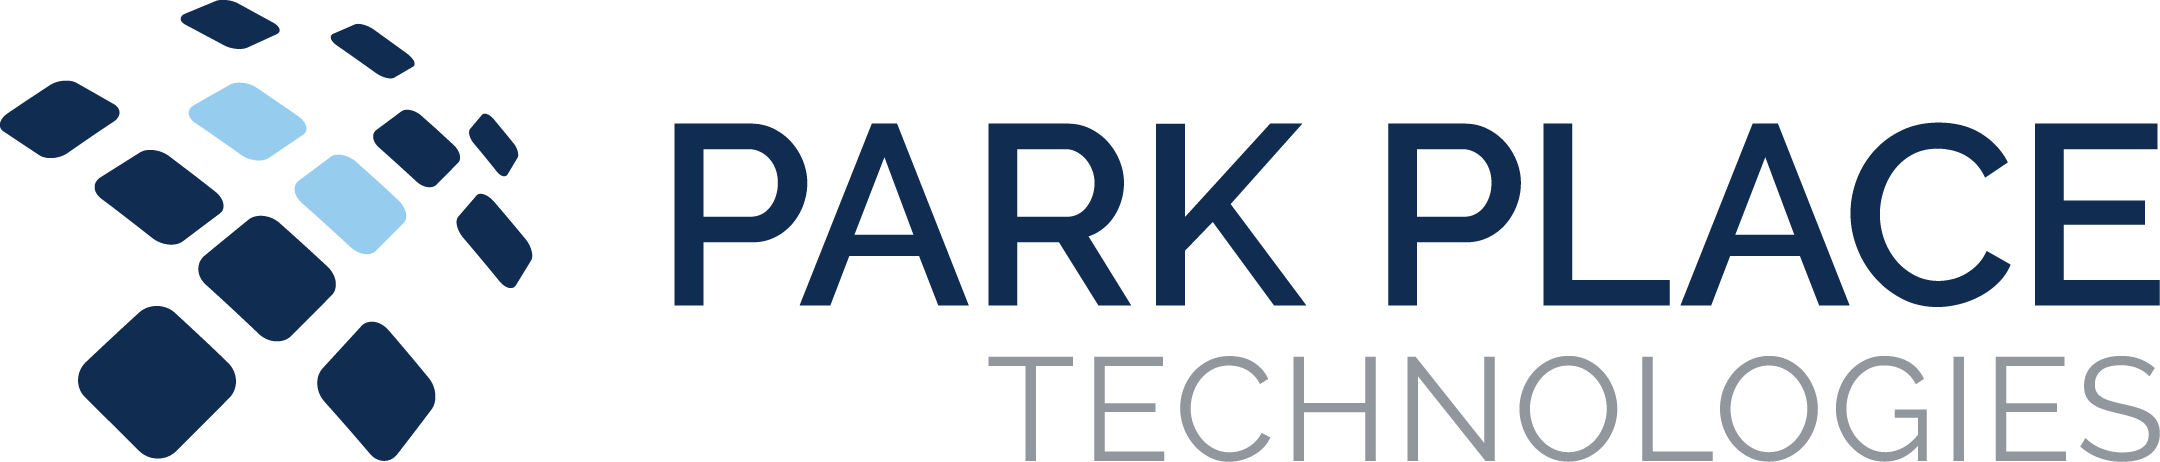 ParkPlaceTechnologies-20508087_ParkPlace_Logo_Horizontal_Color_CMYK.png